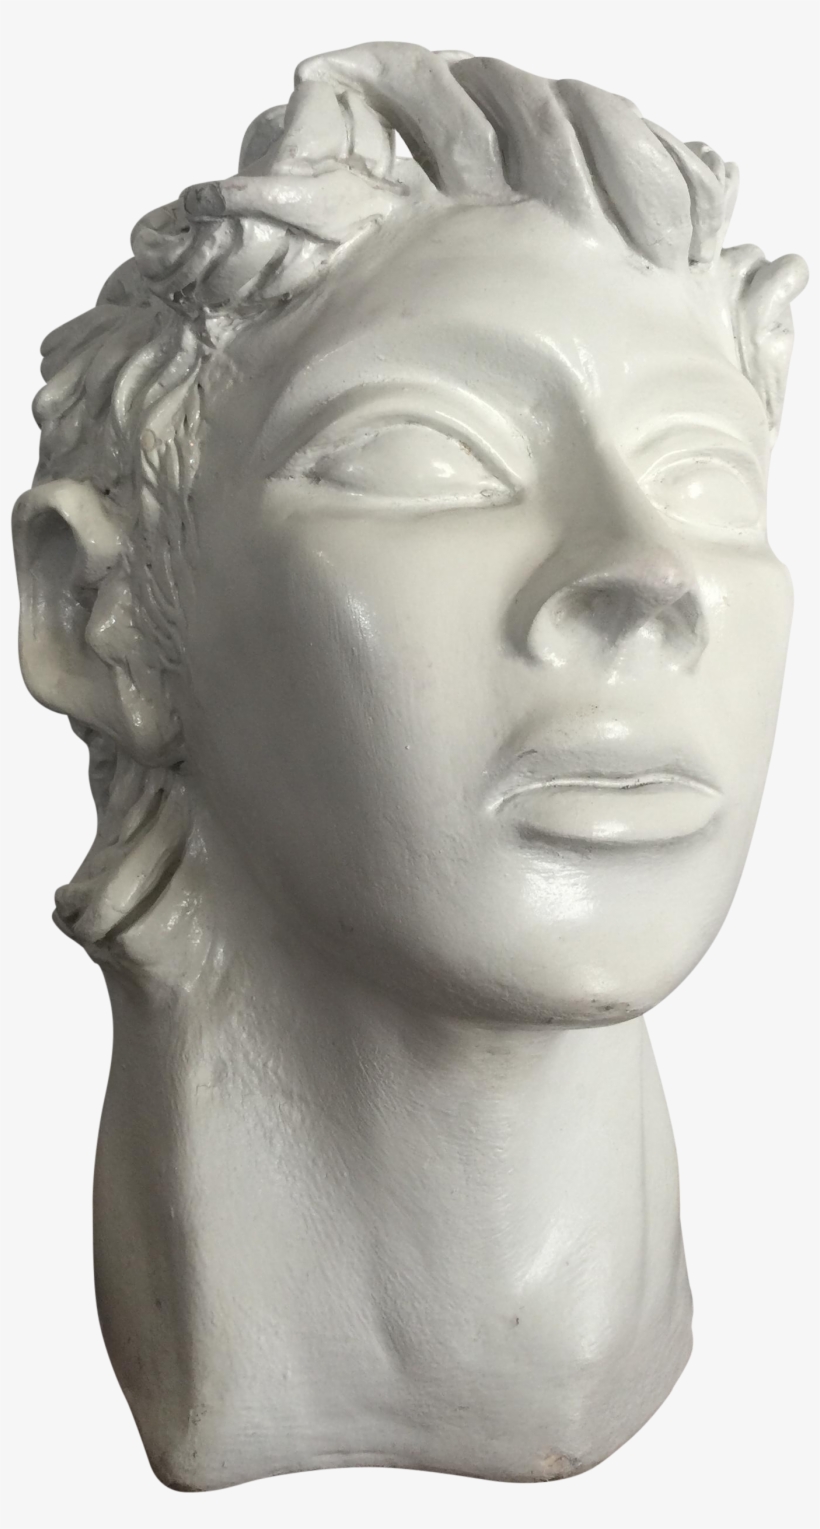 Sculpture Of An Artist's Head On Chairish - Sculpture, transparent png #2935698